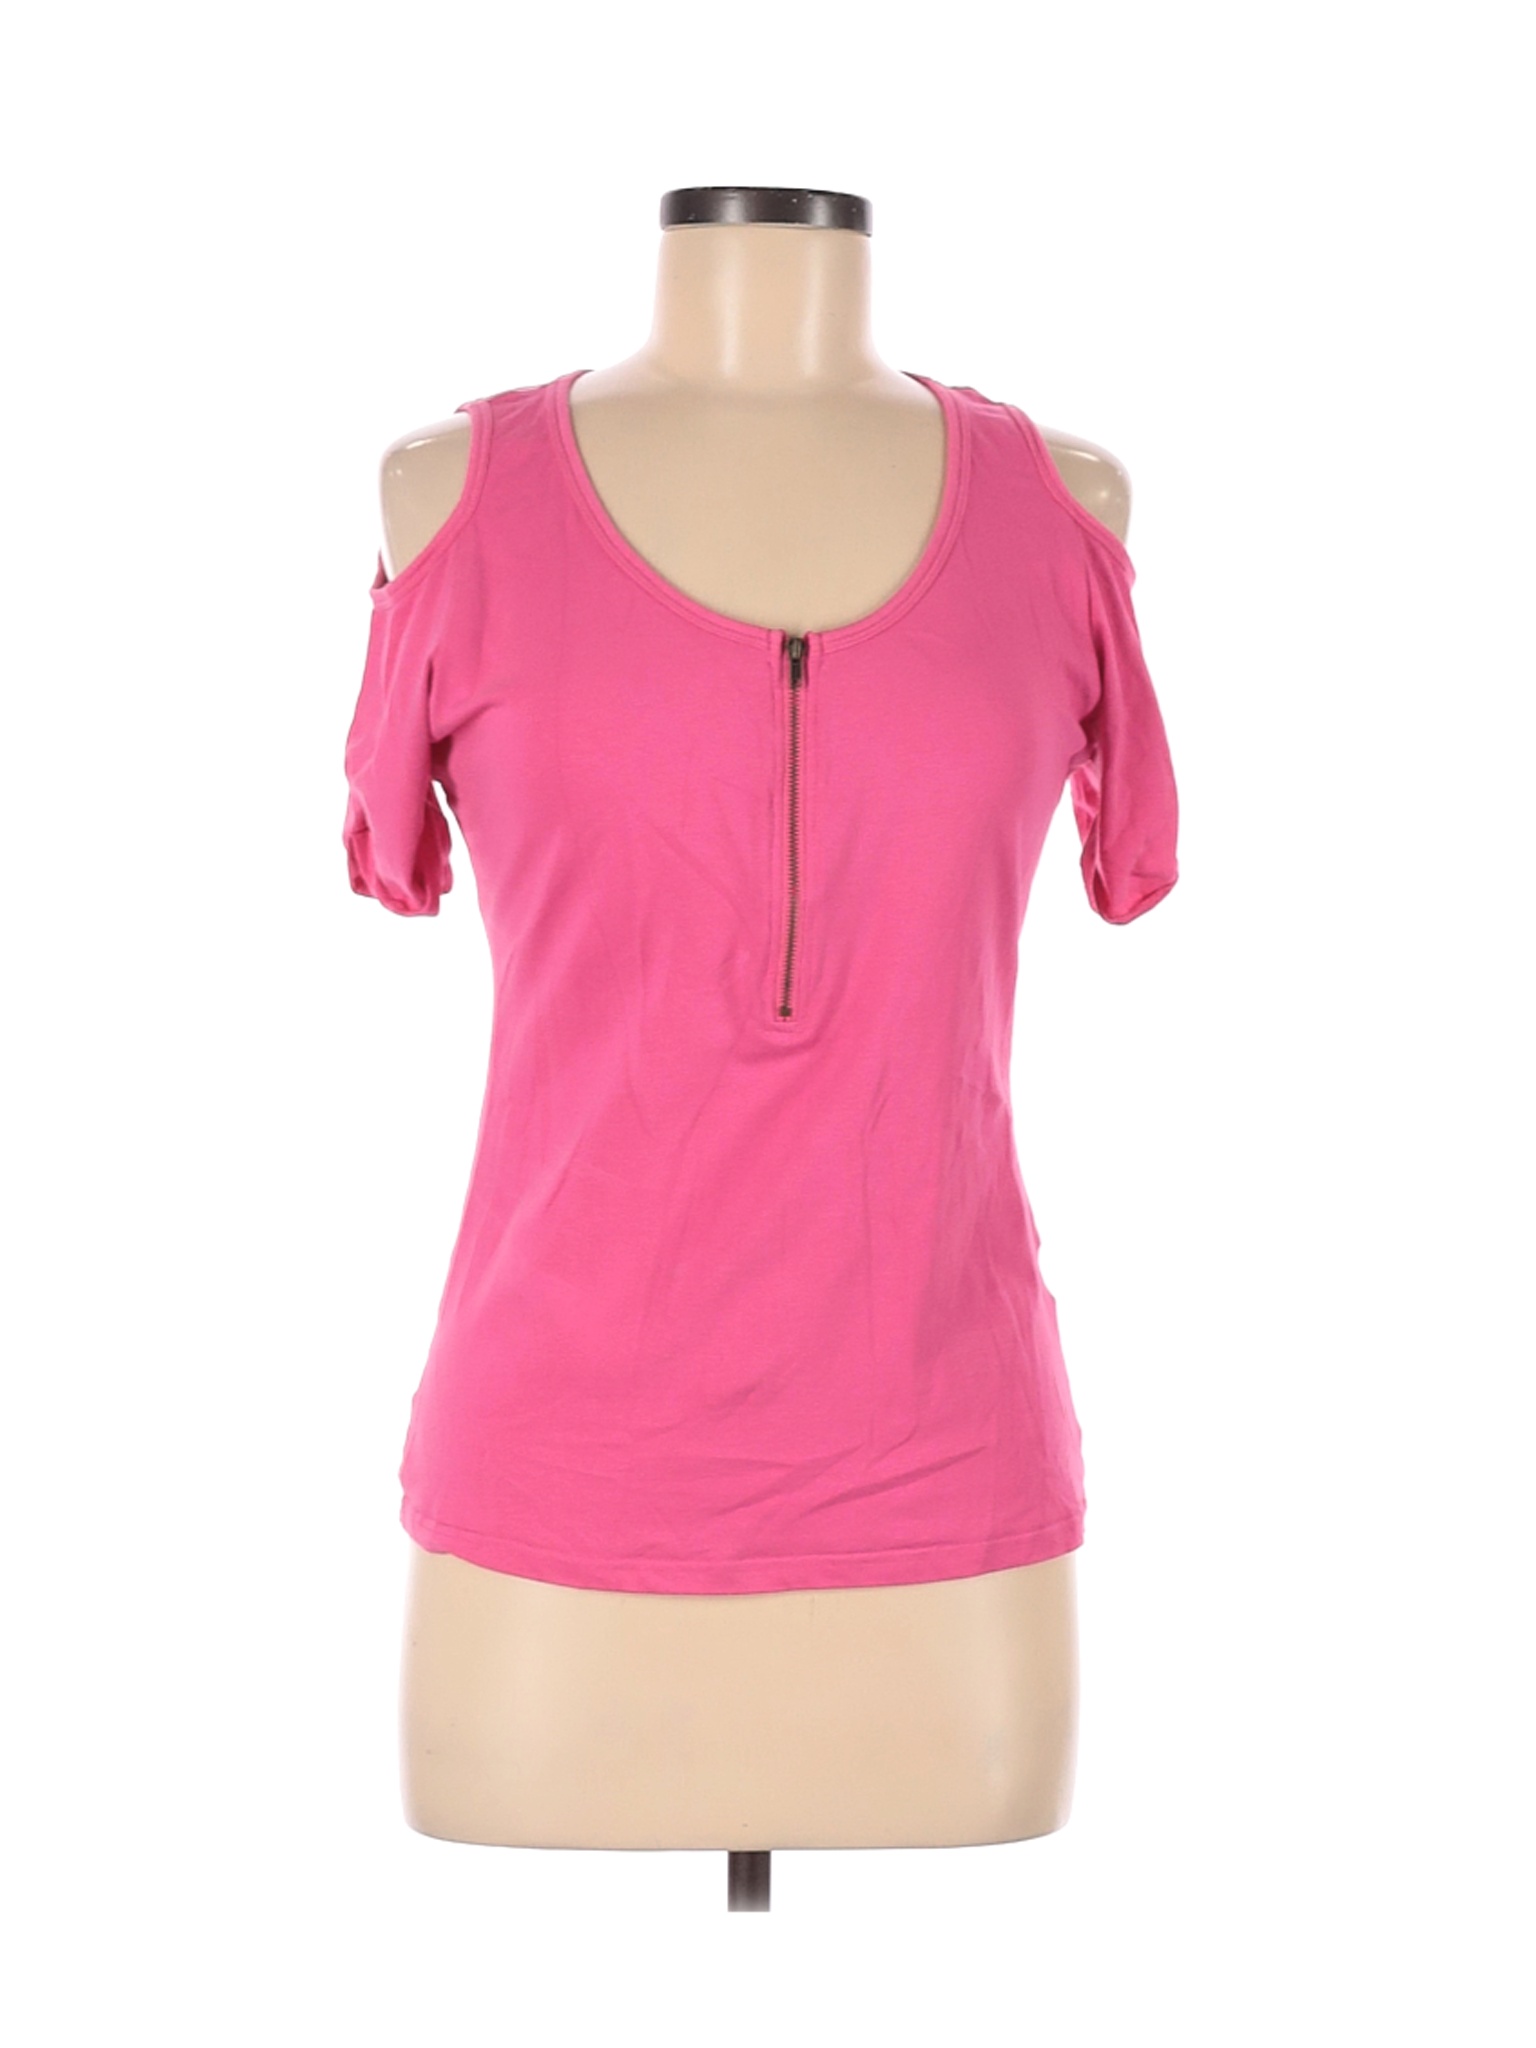 Venus Women Pink Short Sleeve Top M | eBay